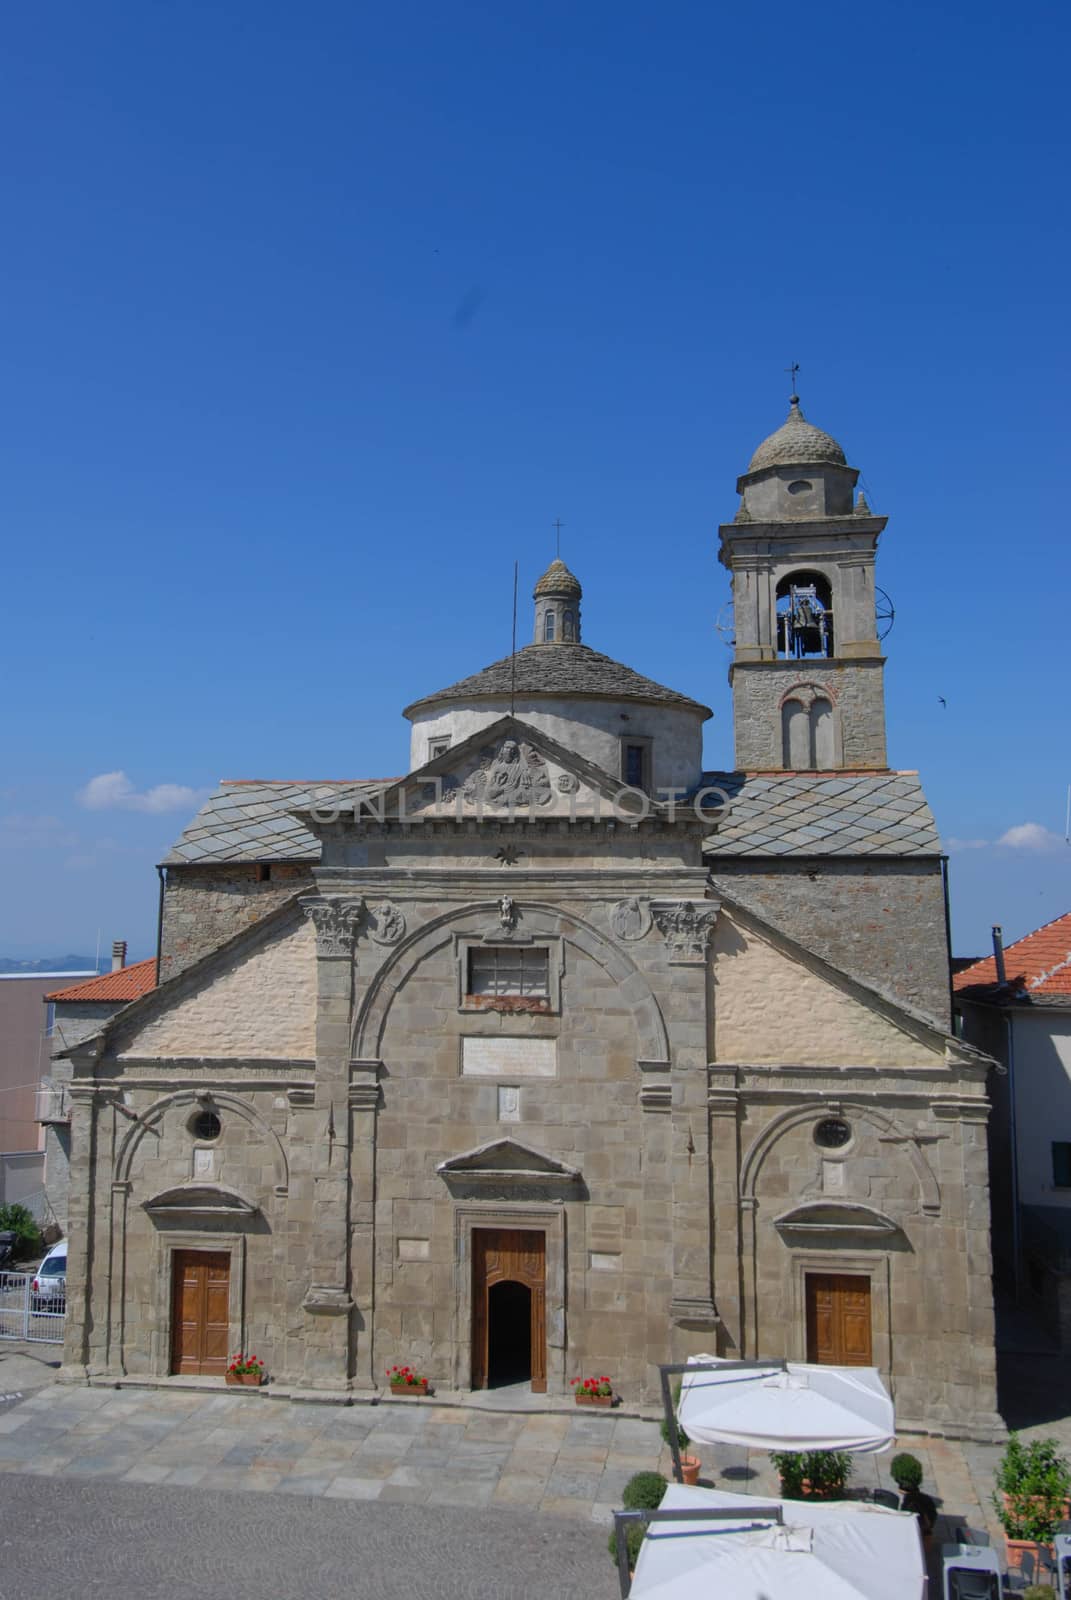 Church of Santa Maria Annunziata, Roccaverano - Italy by cosca